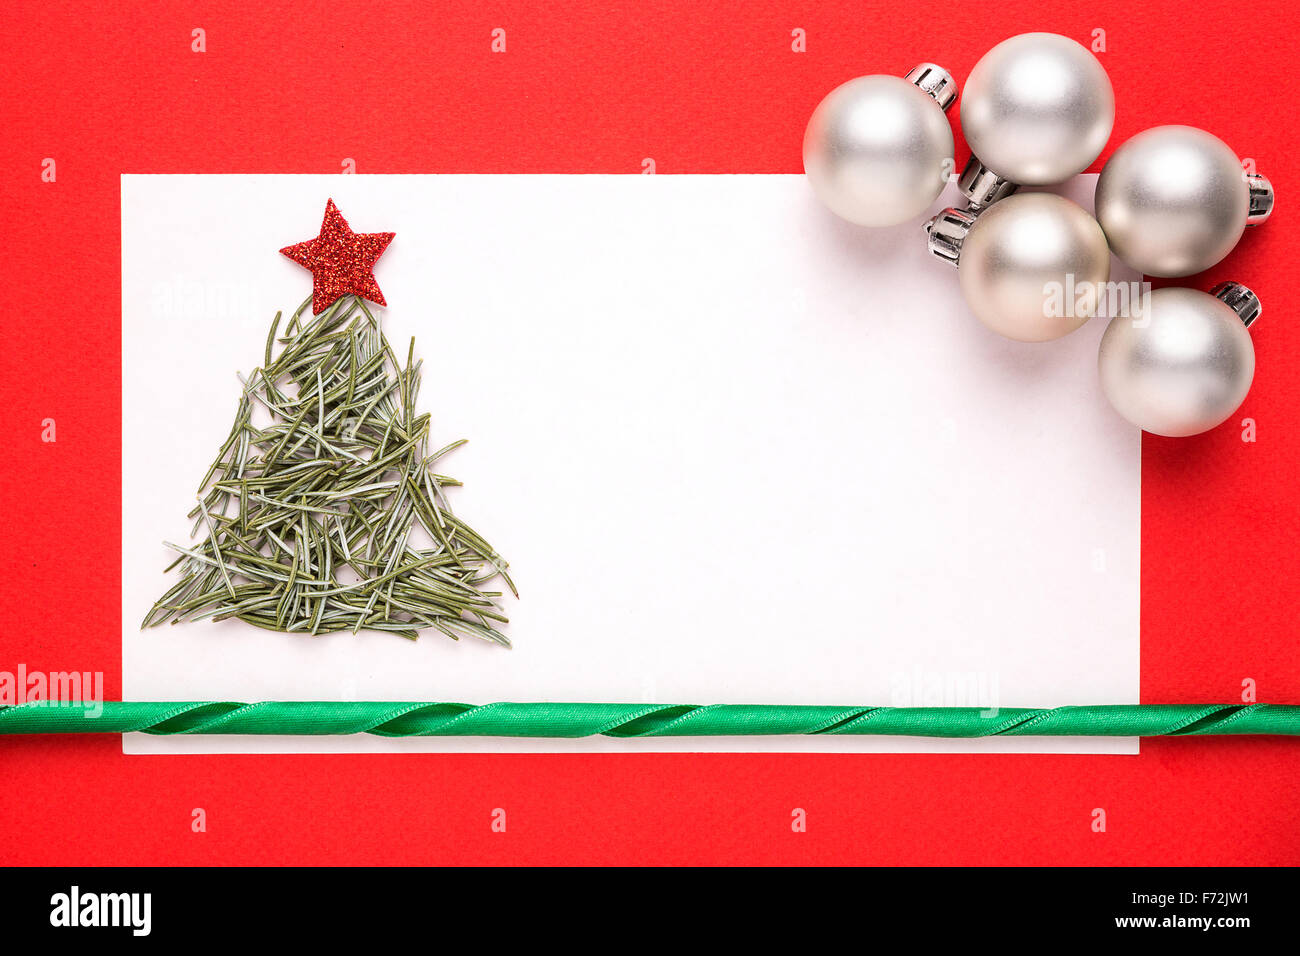 Tarjeta de Navidad en blanco o invitación con árbol de Navidad hechas de agujas de pino sobre fondo rojo. Foto de stock